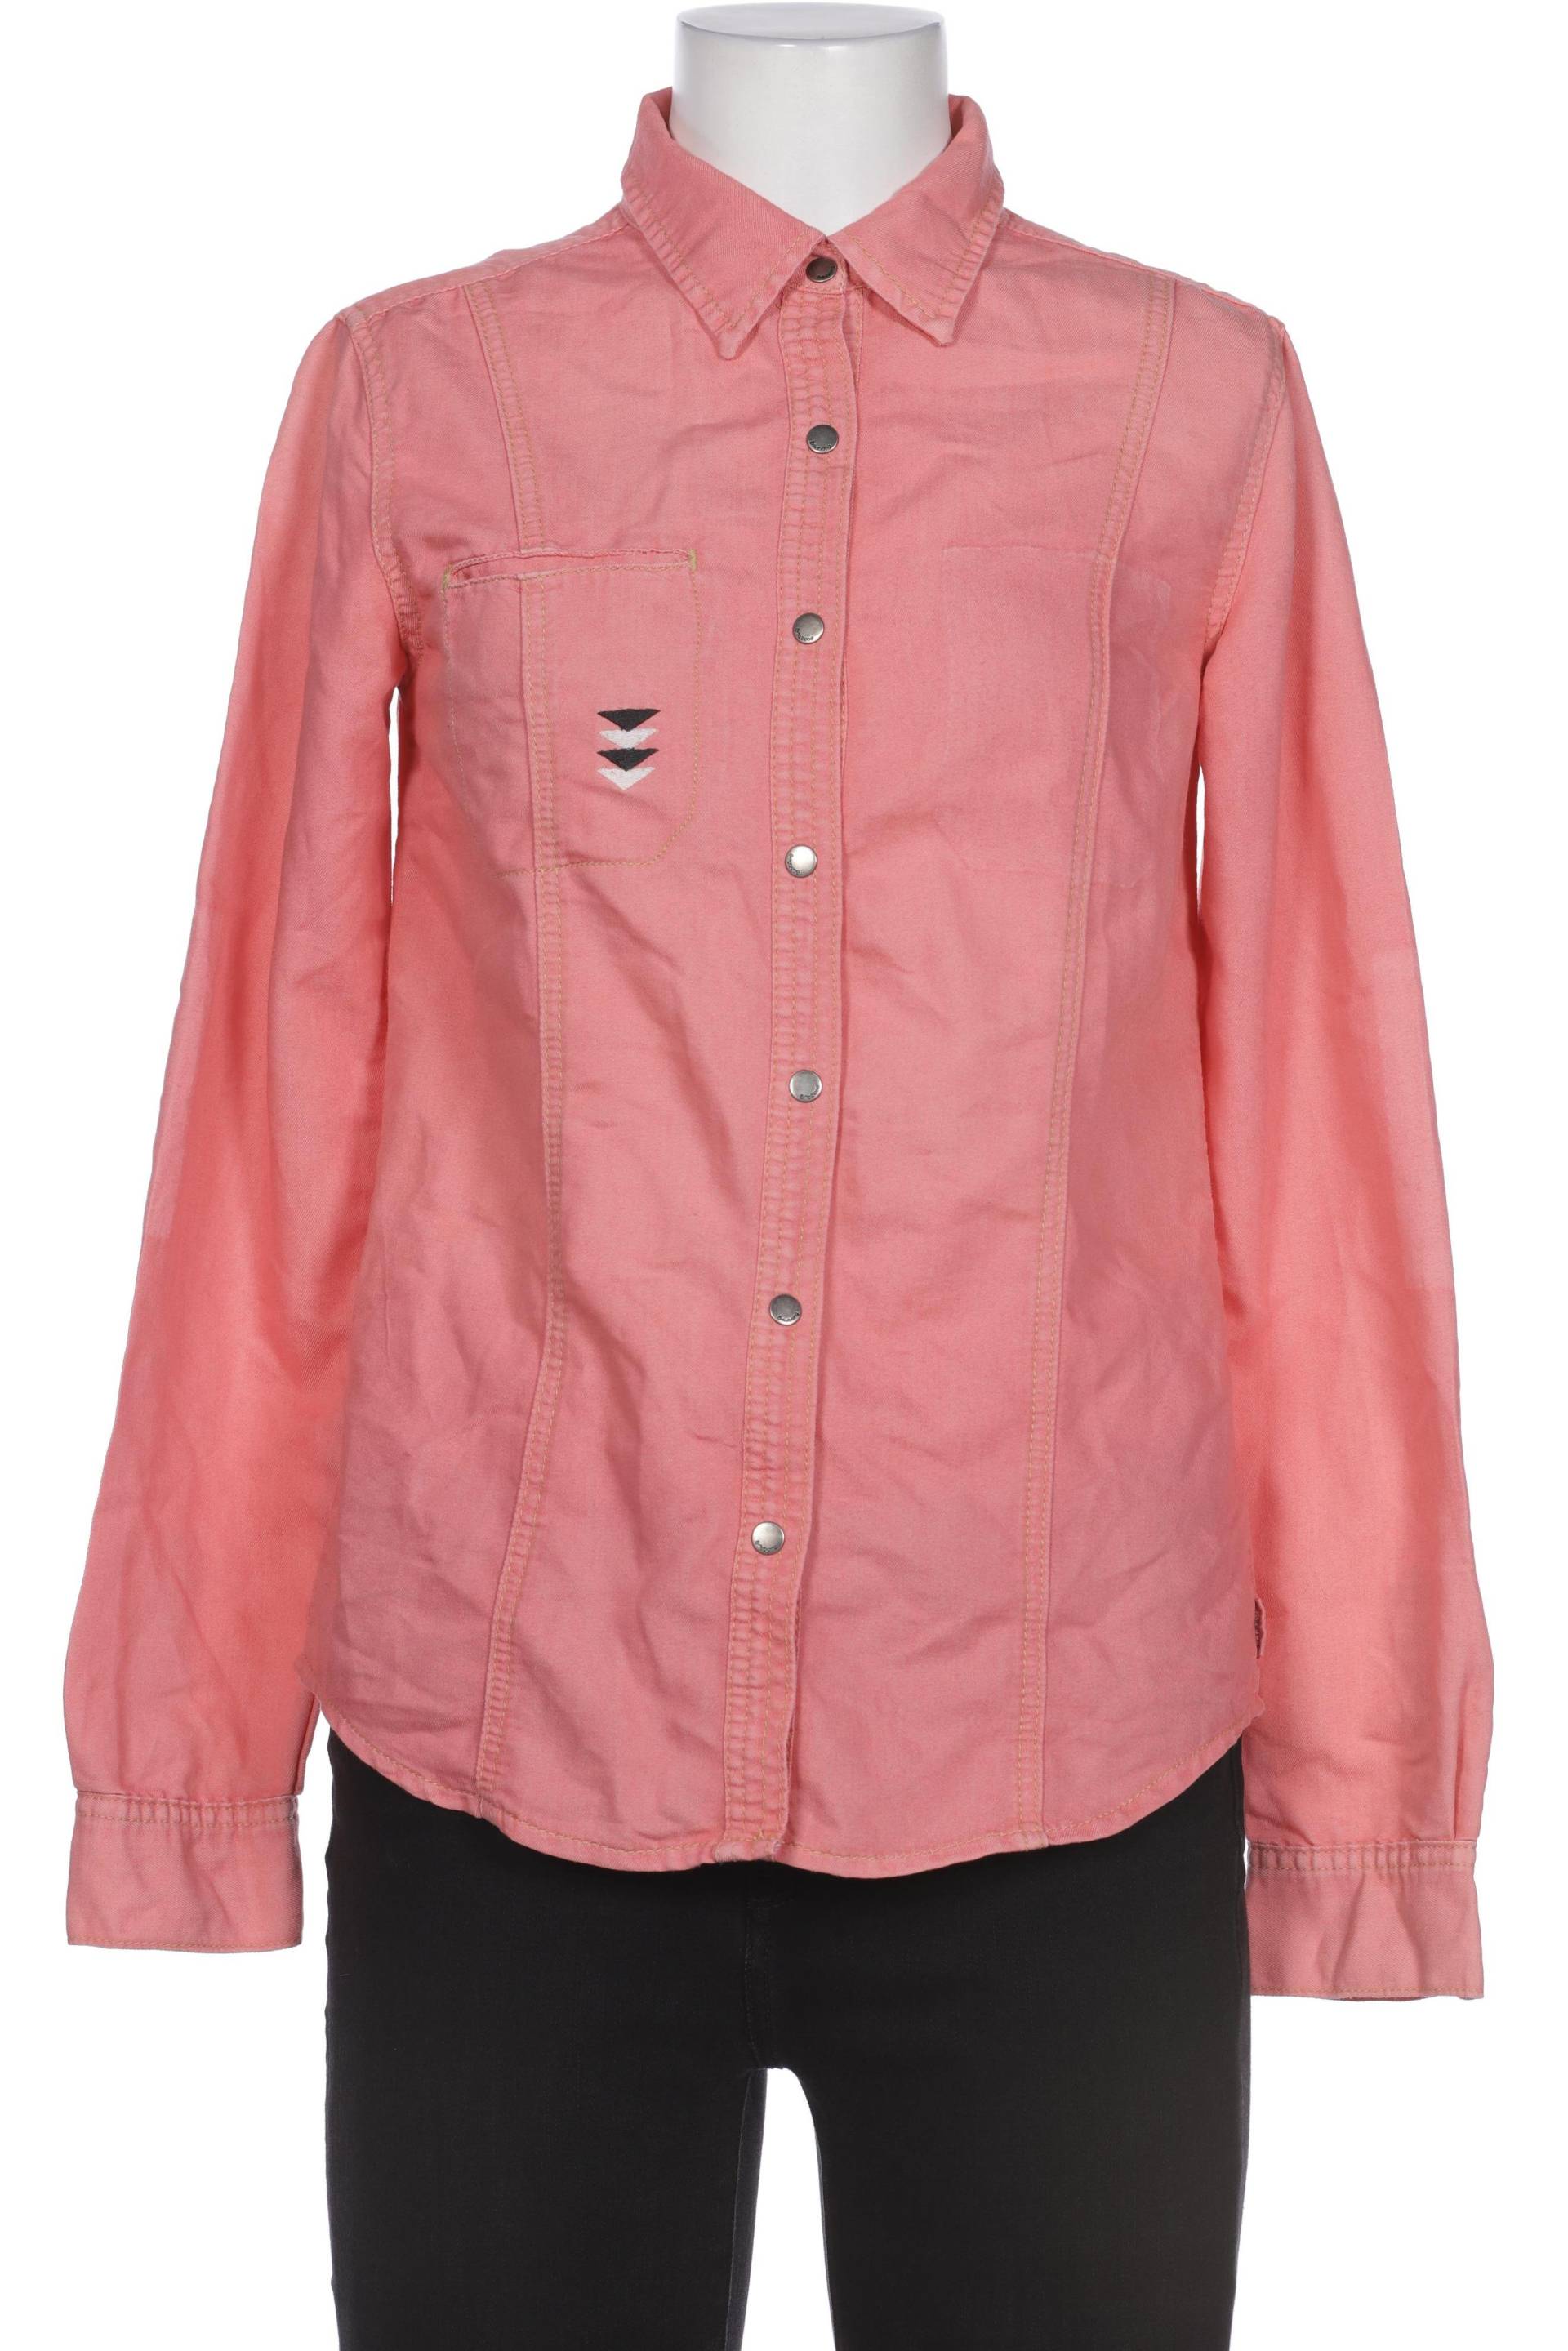 BILLABONG Damen Bluse, pink von Billabong